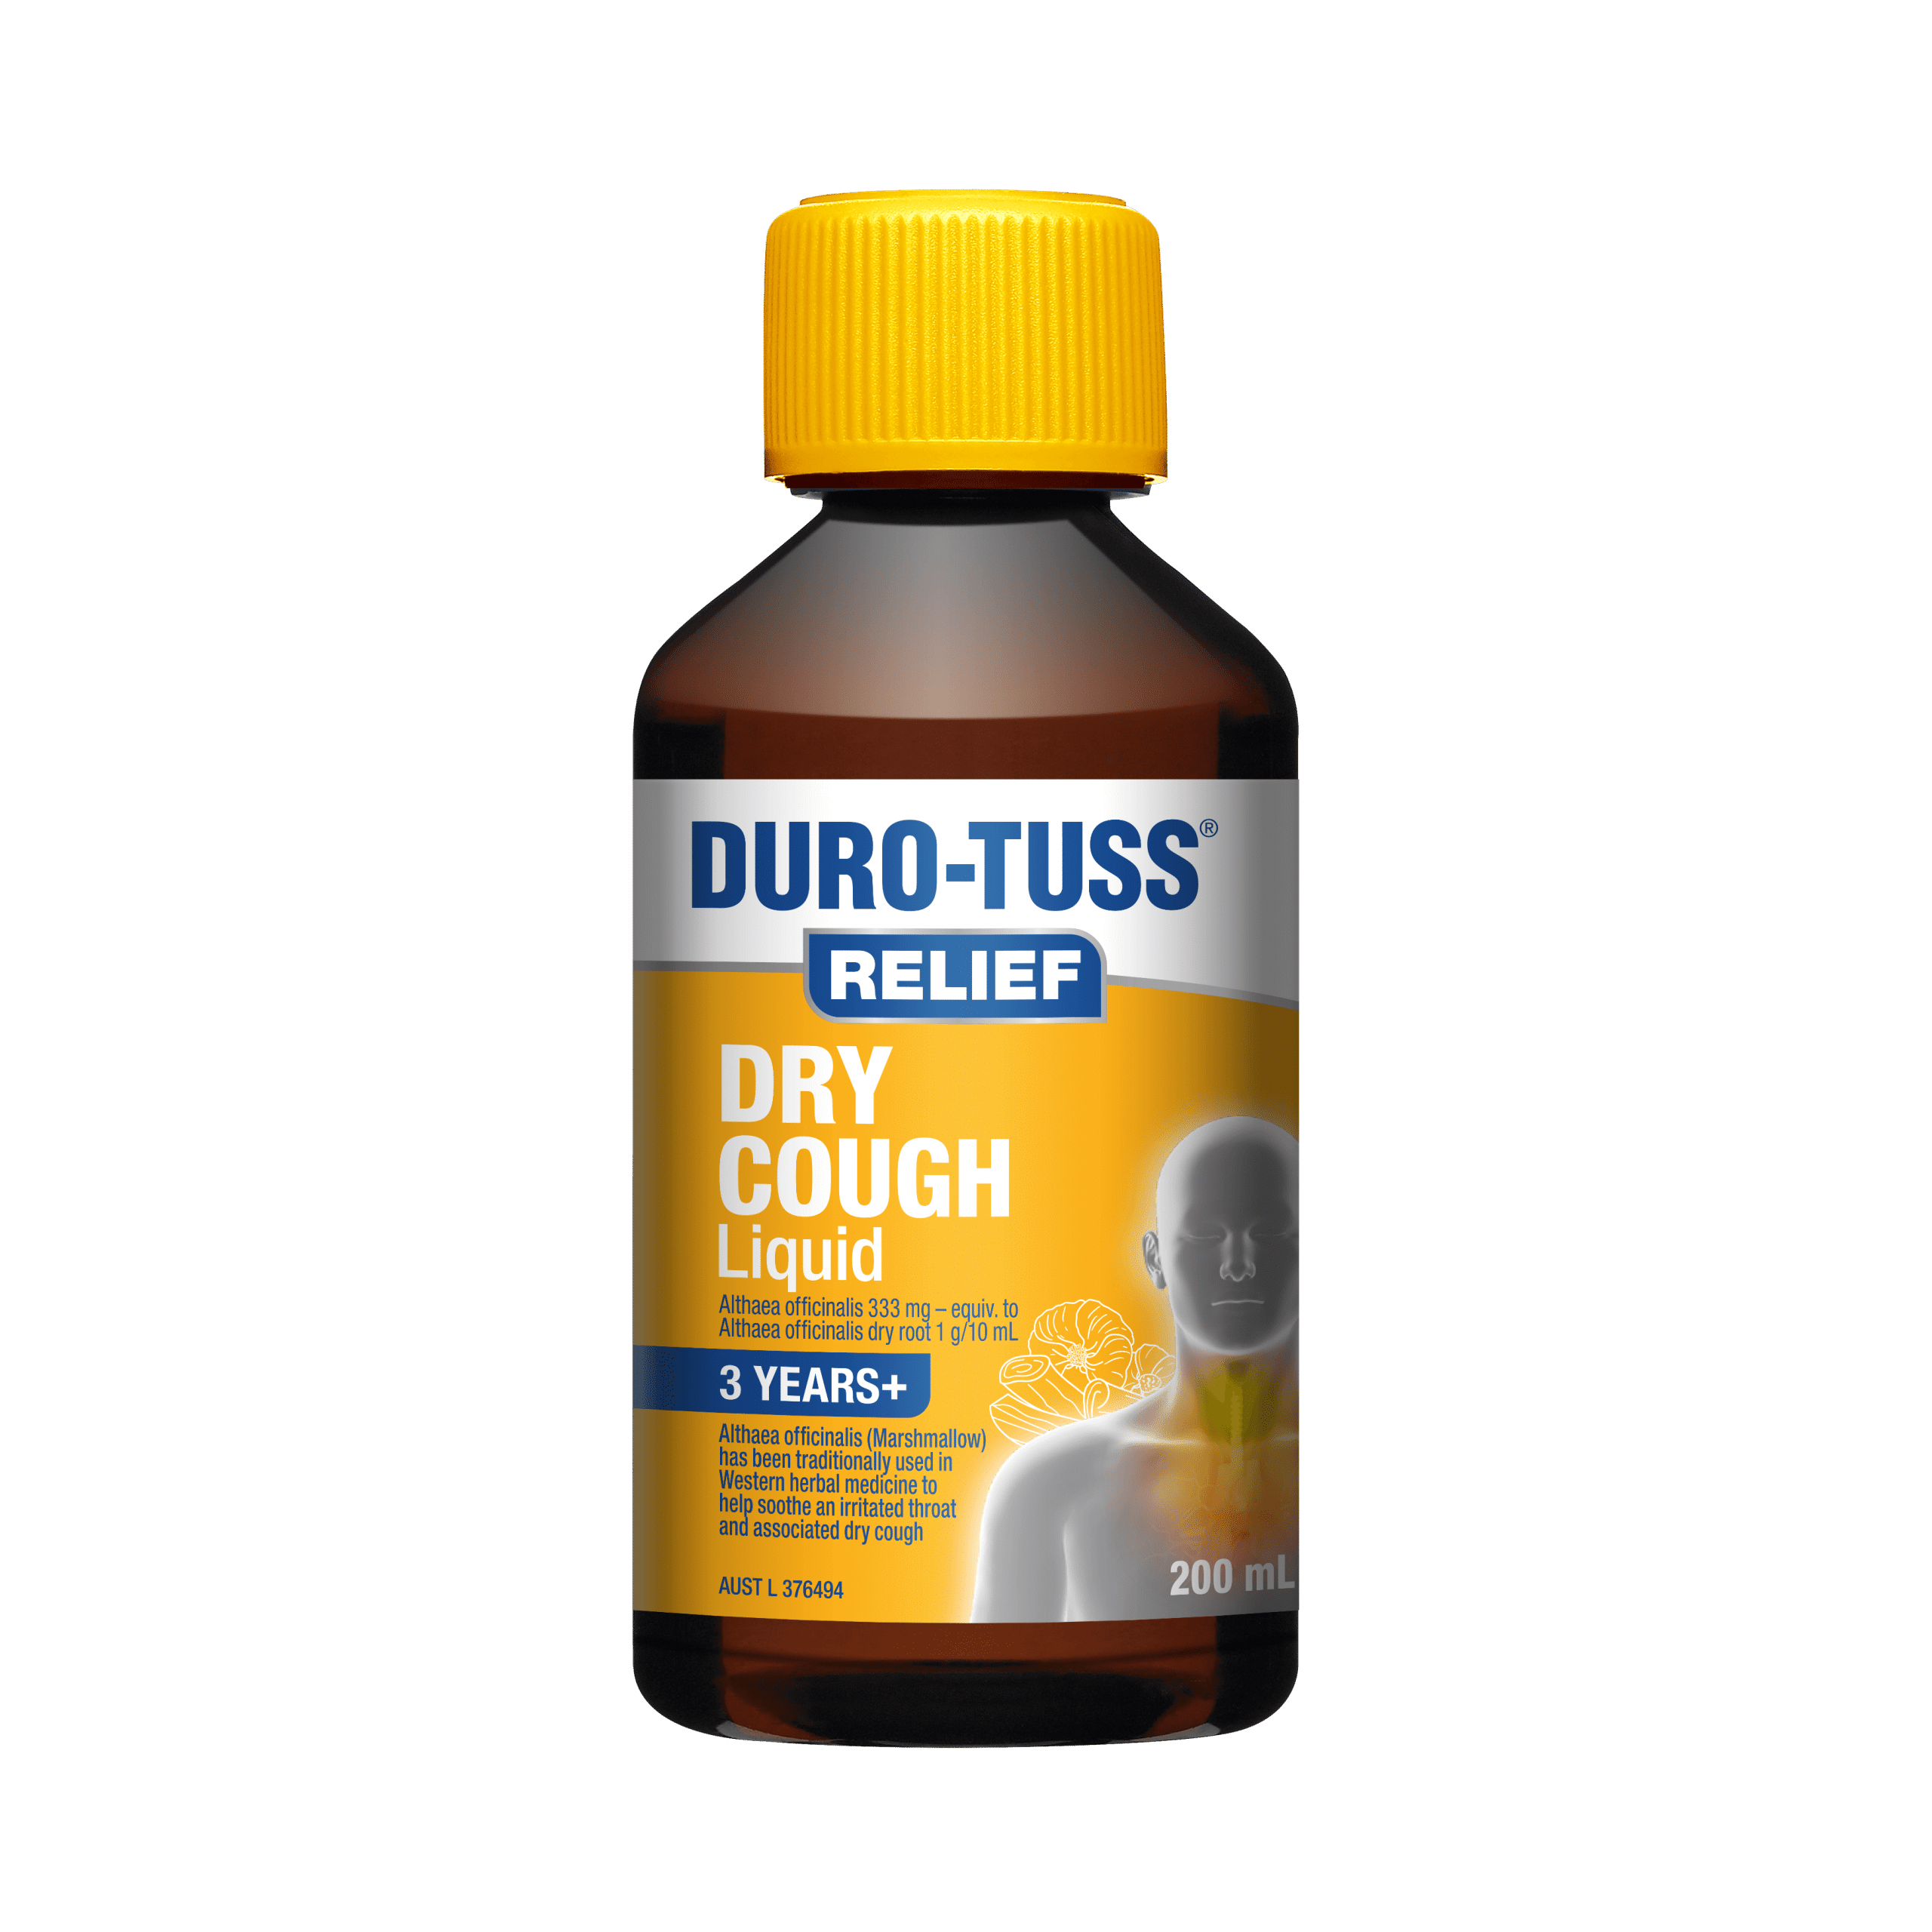 Duro-tuss cough medicine